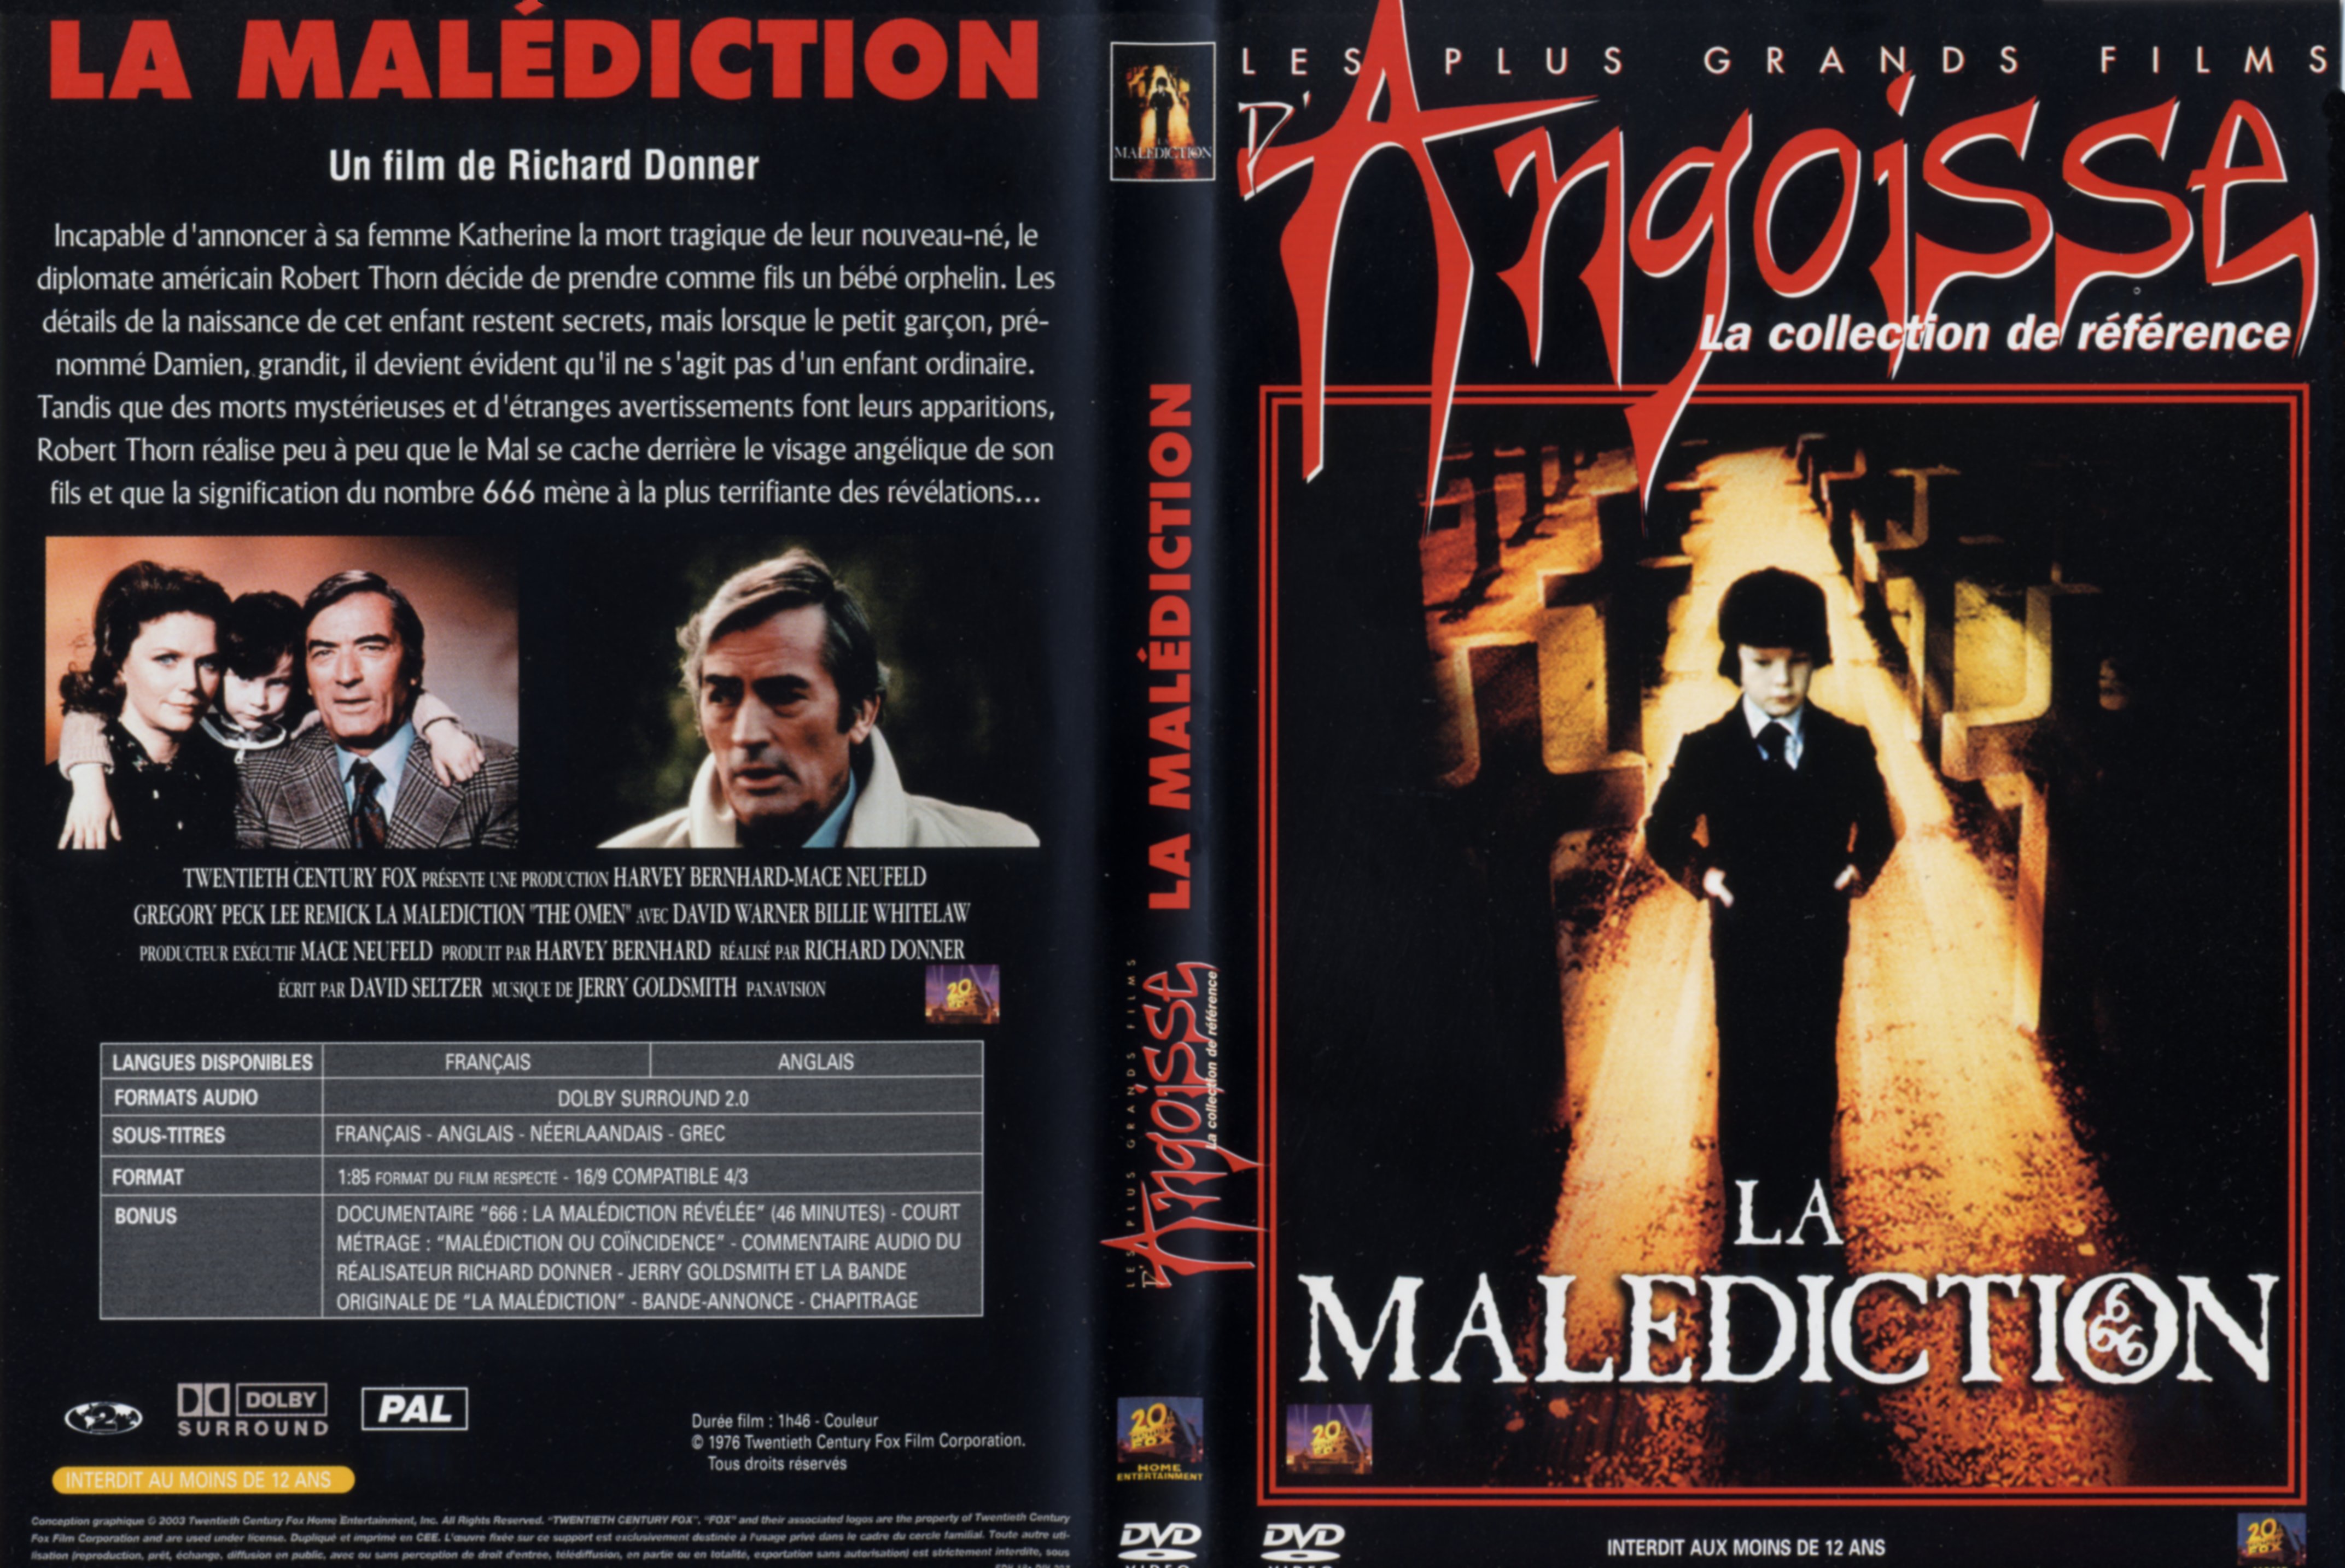 Jaquette DVD La maldiction v2